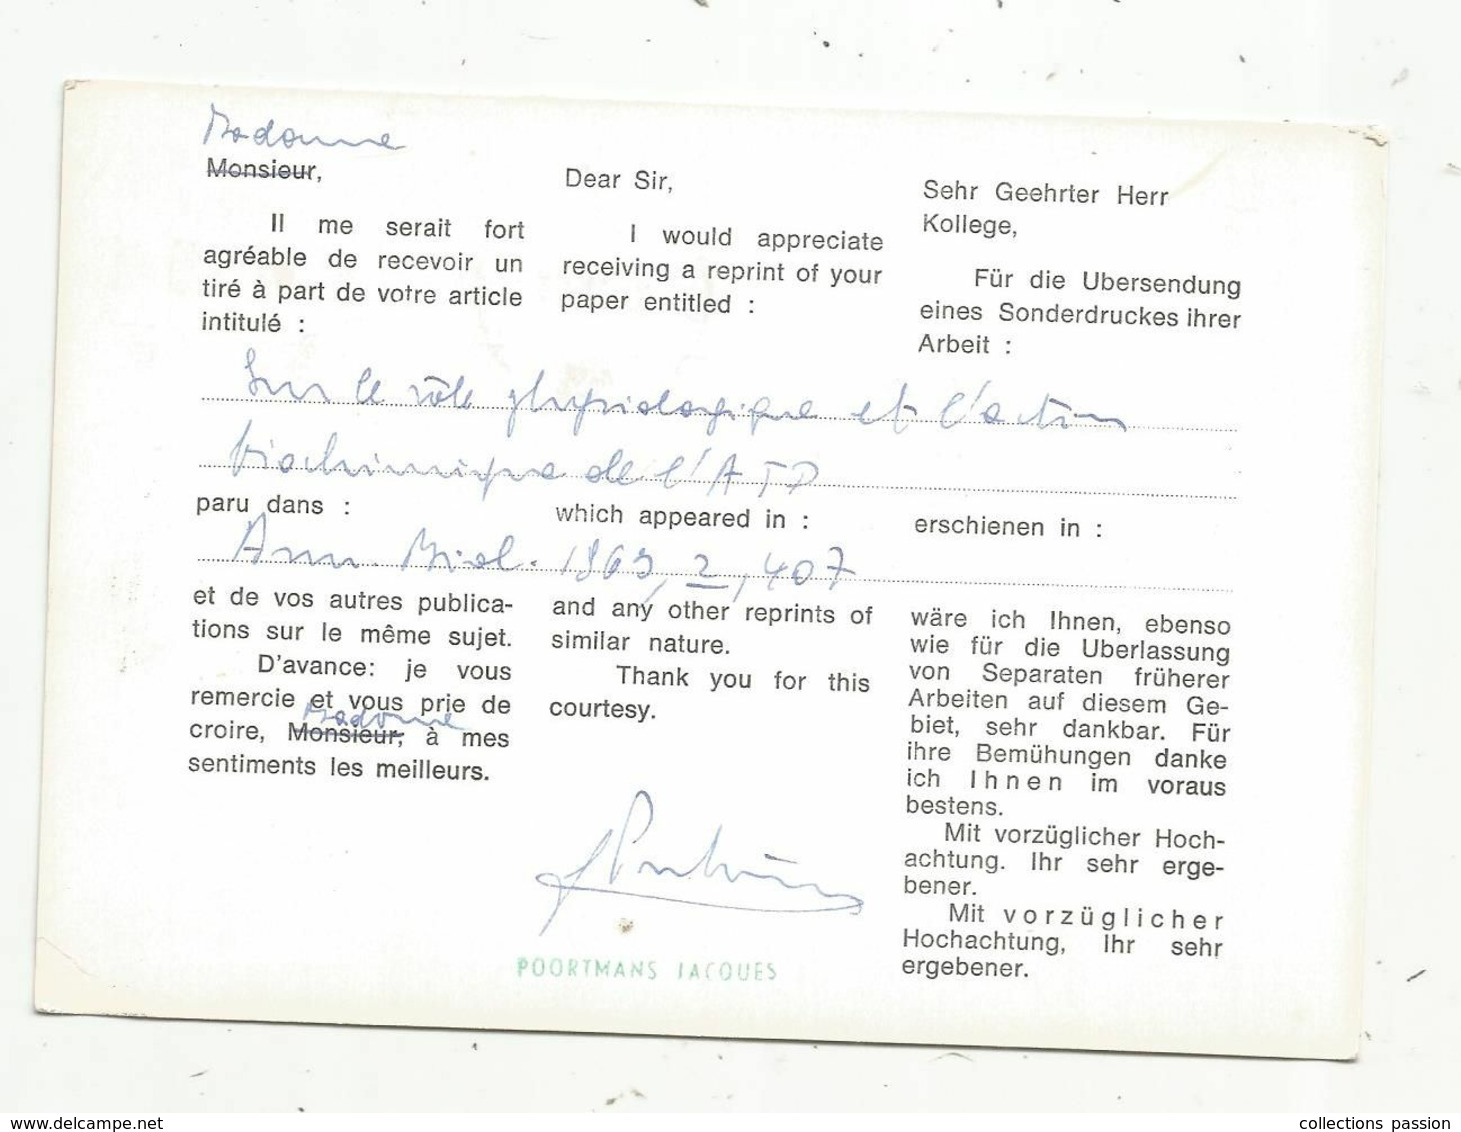 JC, Carte Postale,  EMA , Belgique, Bruxelles-Brussel, 1963 ,institut National De L'éducation Physique Et Des Sports - Other & Unclassified